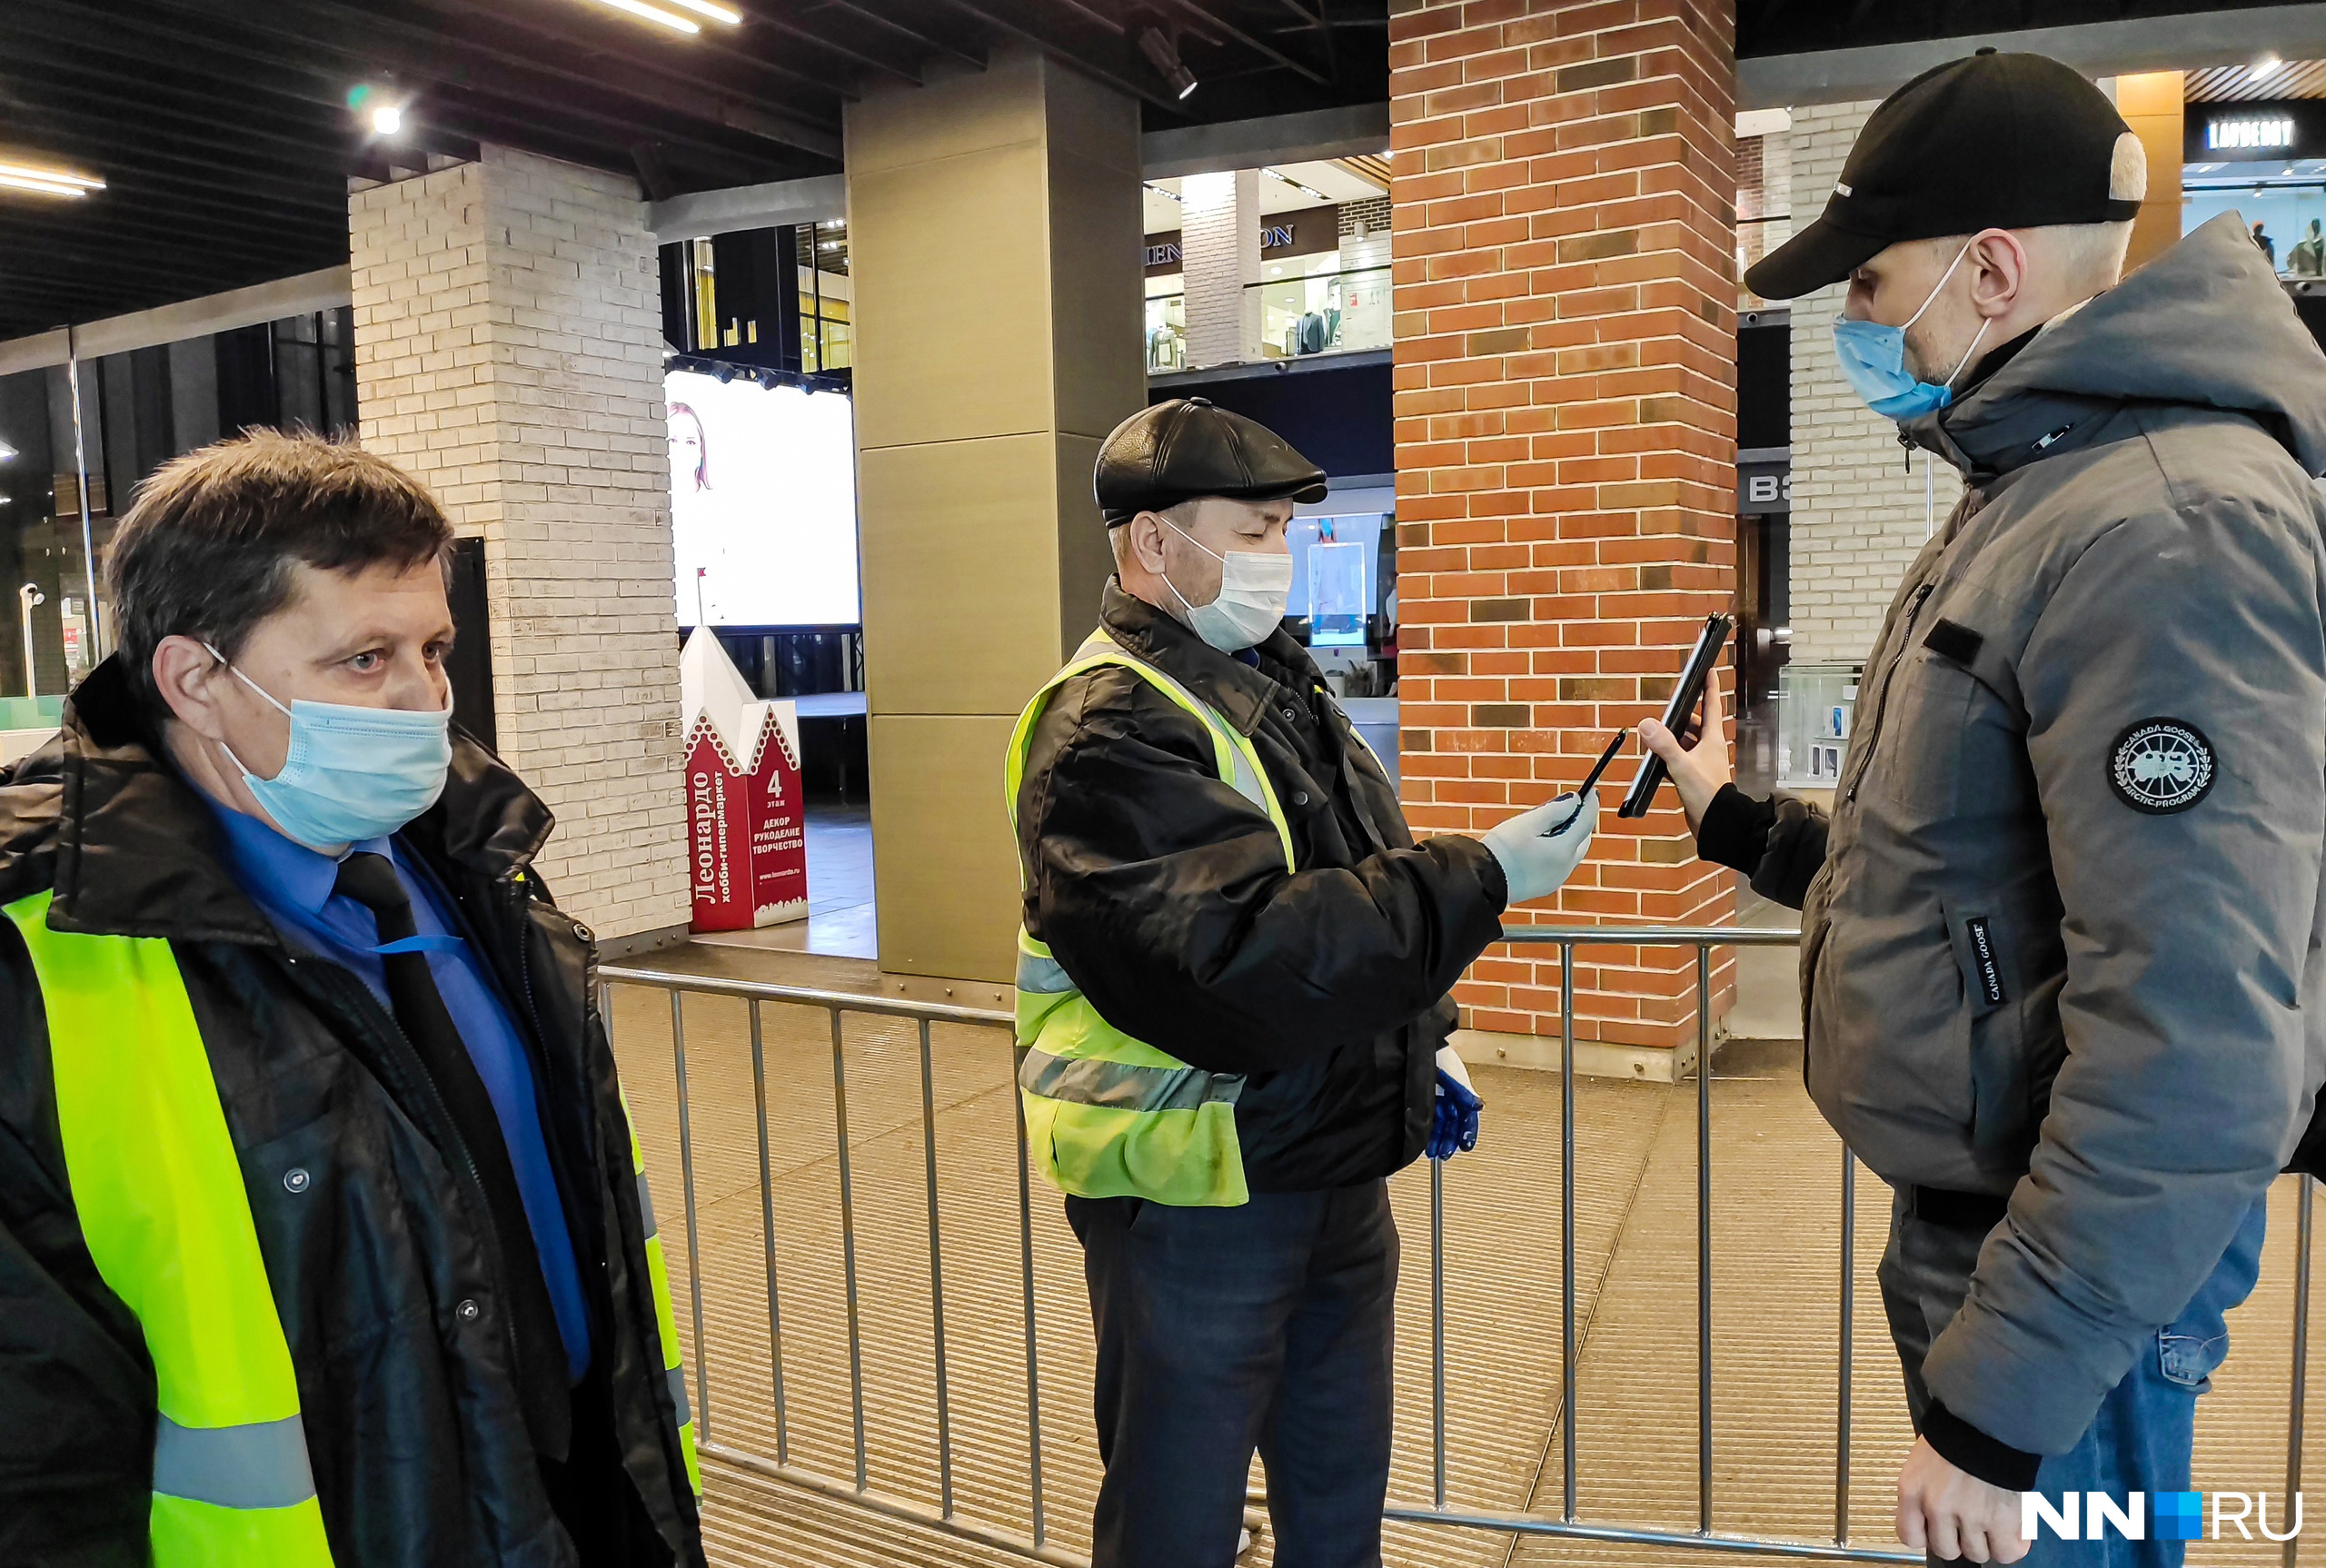 Охранники сканируют QR-код с помощью телефонов